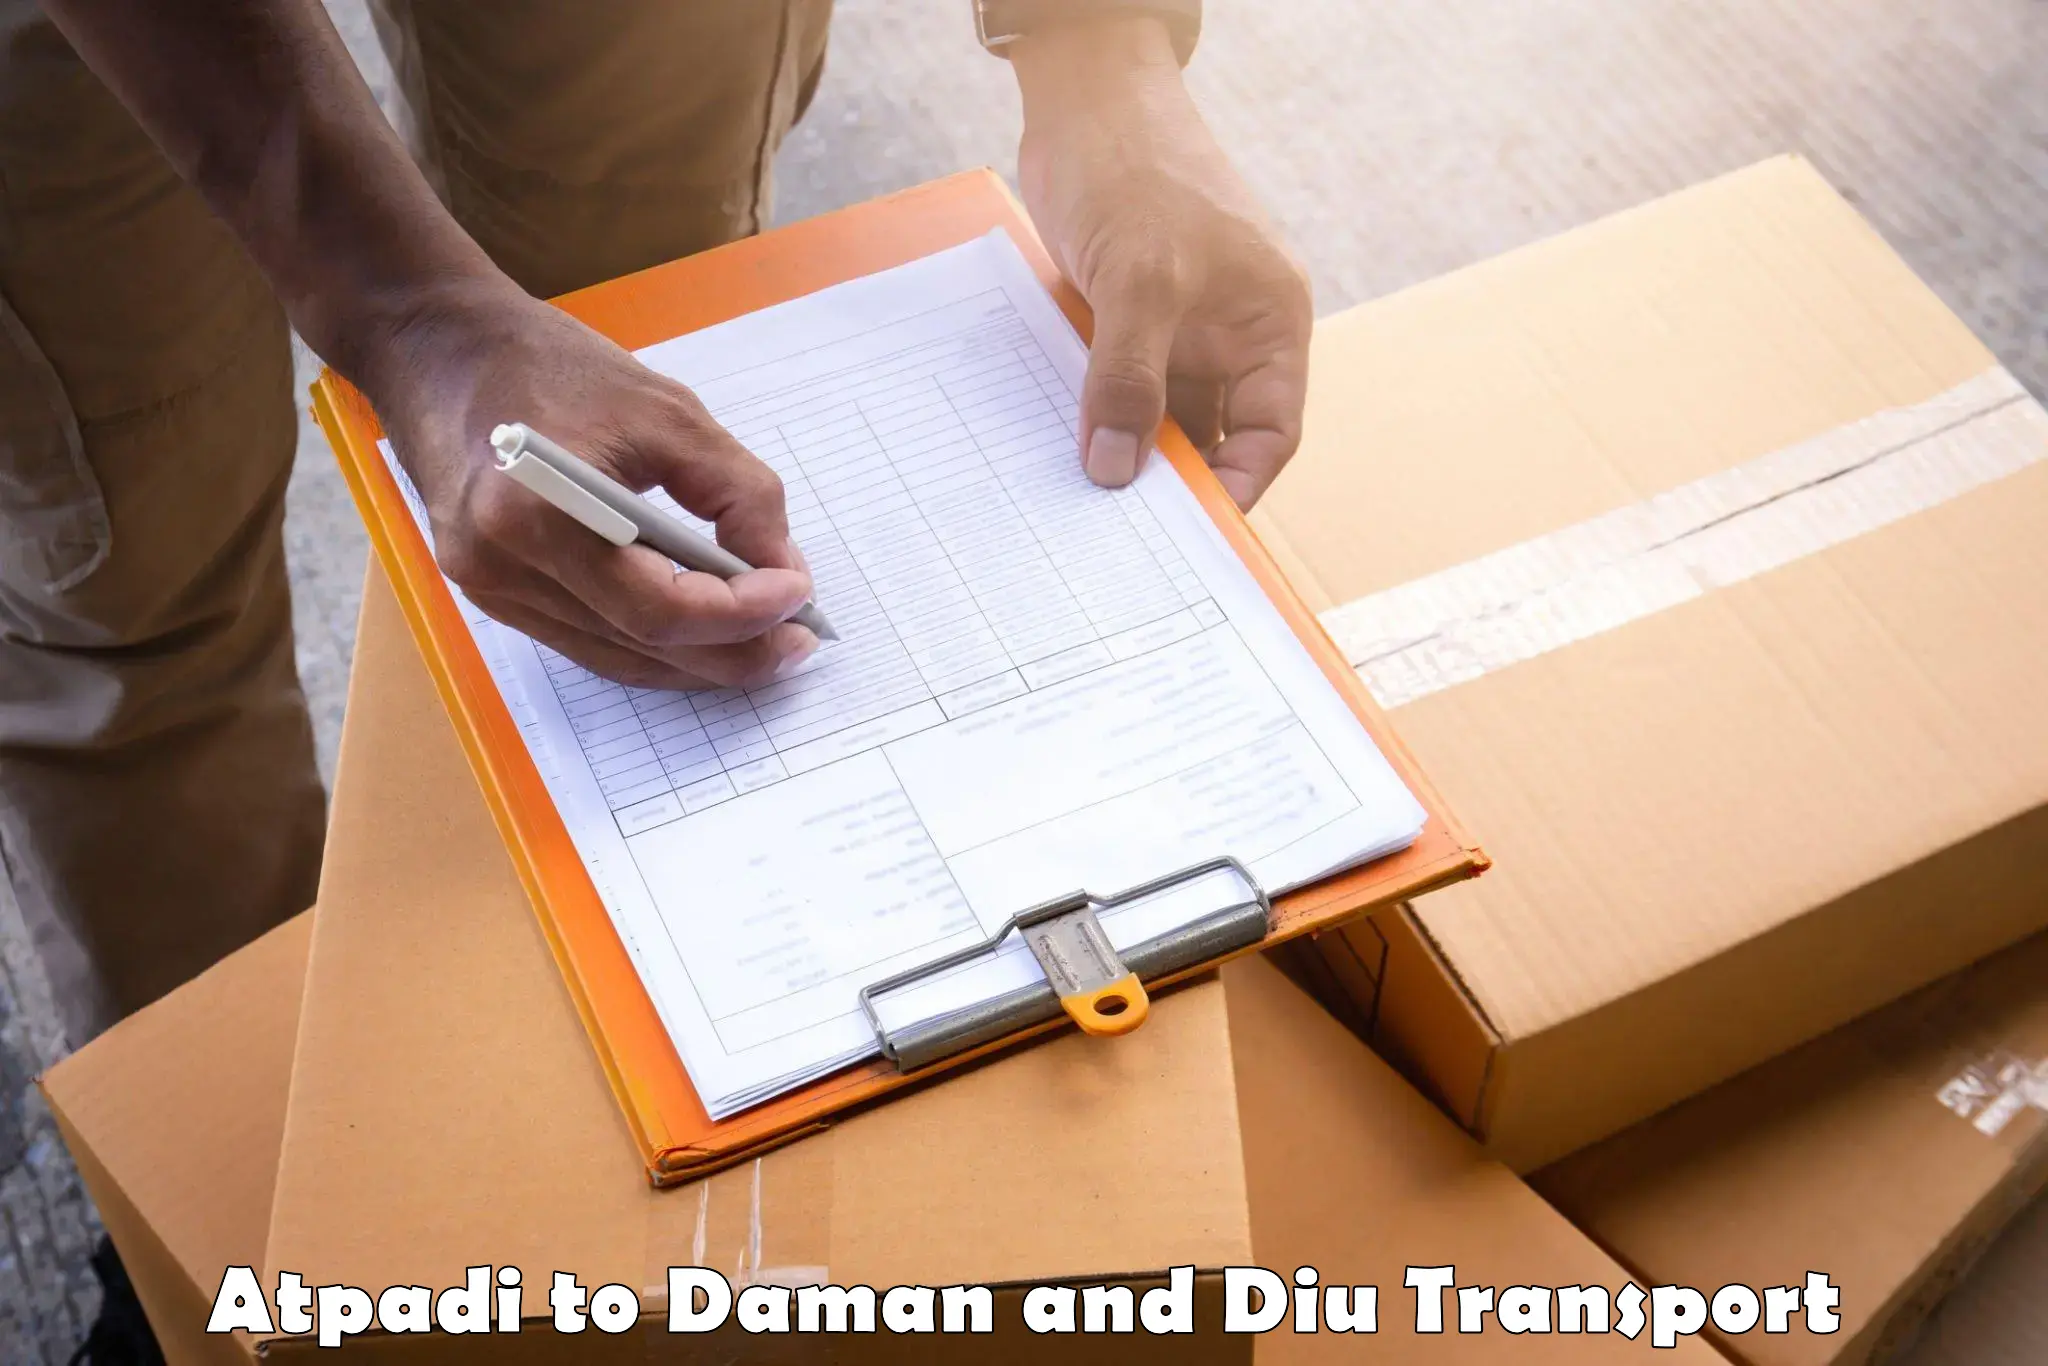 Logistics transportation services Atpadi to Daman